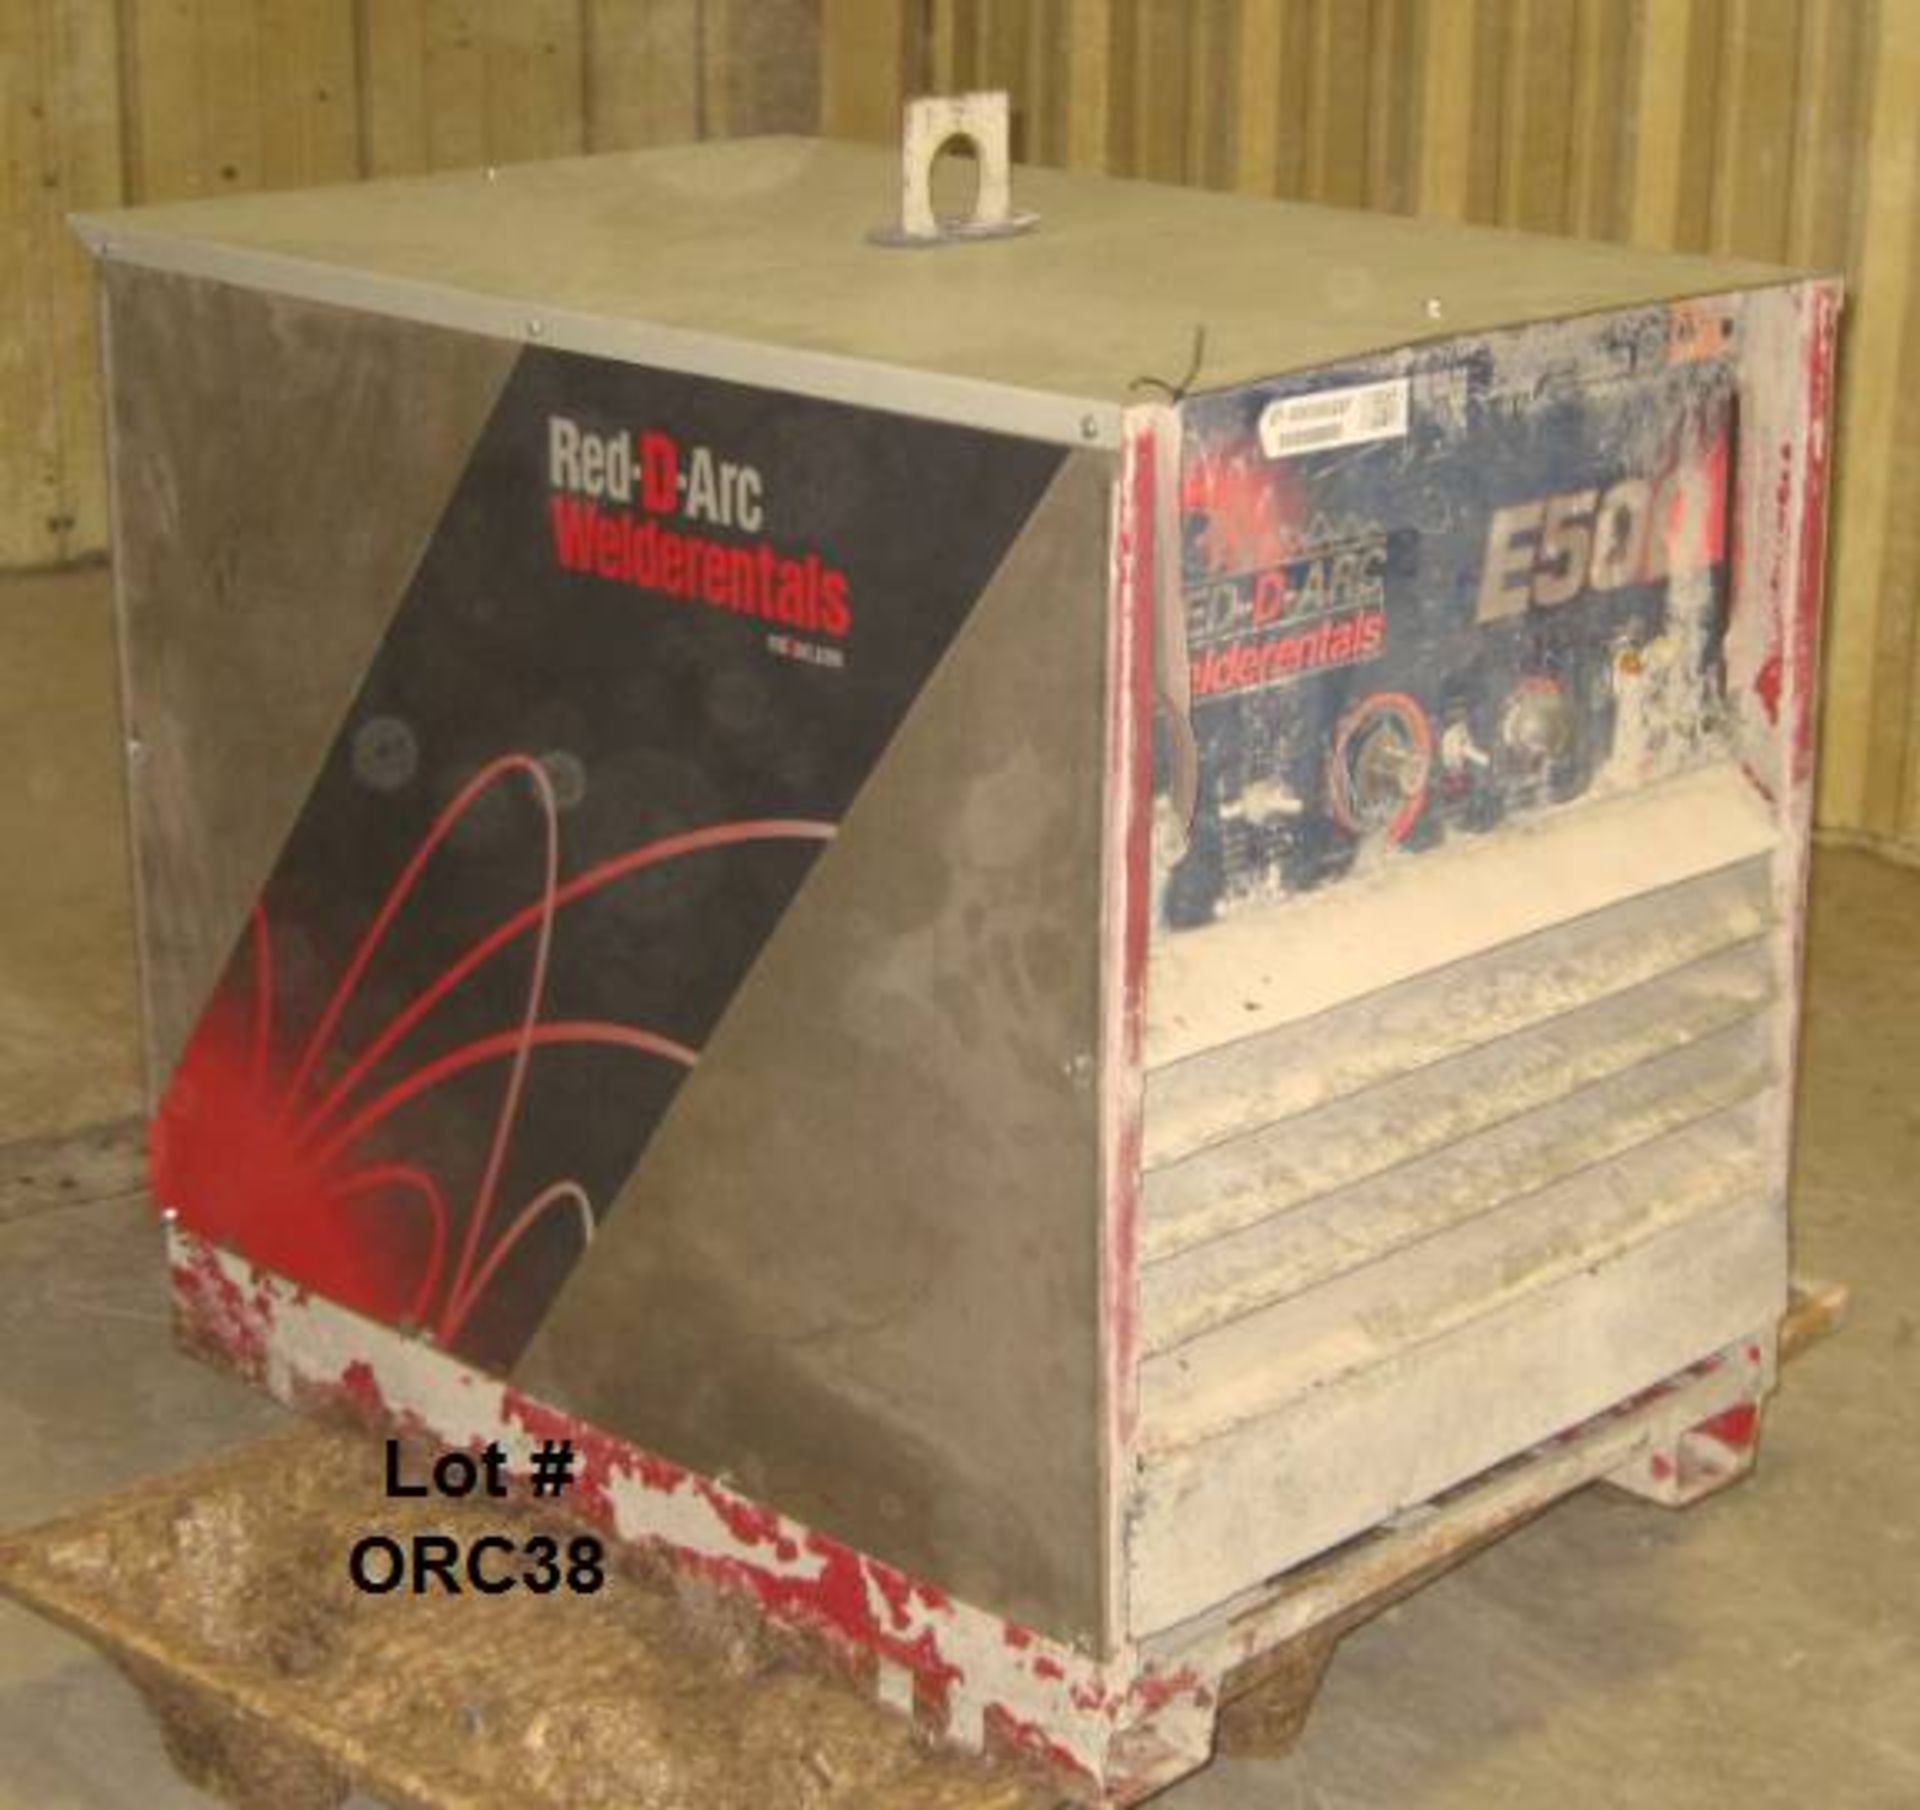 2000 LINCOLN RLK1286 E500 electric welder (R3R500)